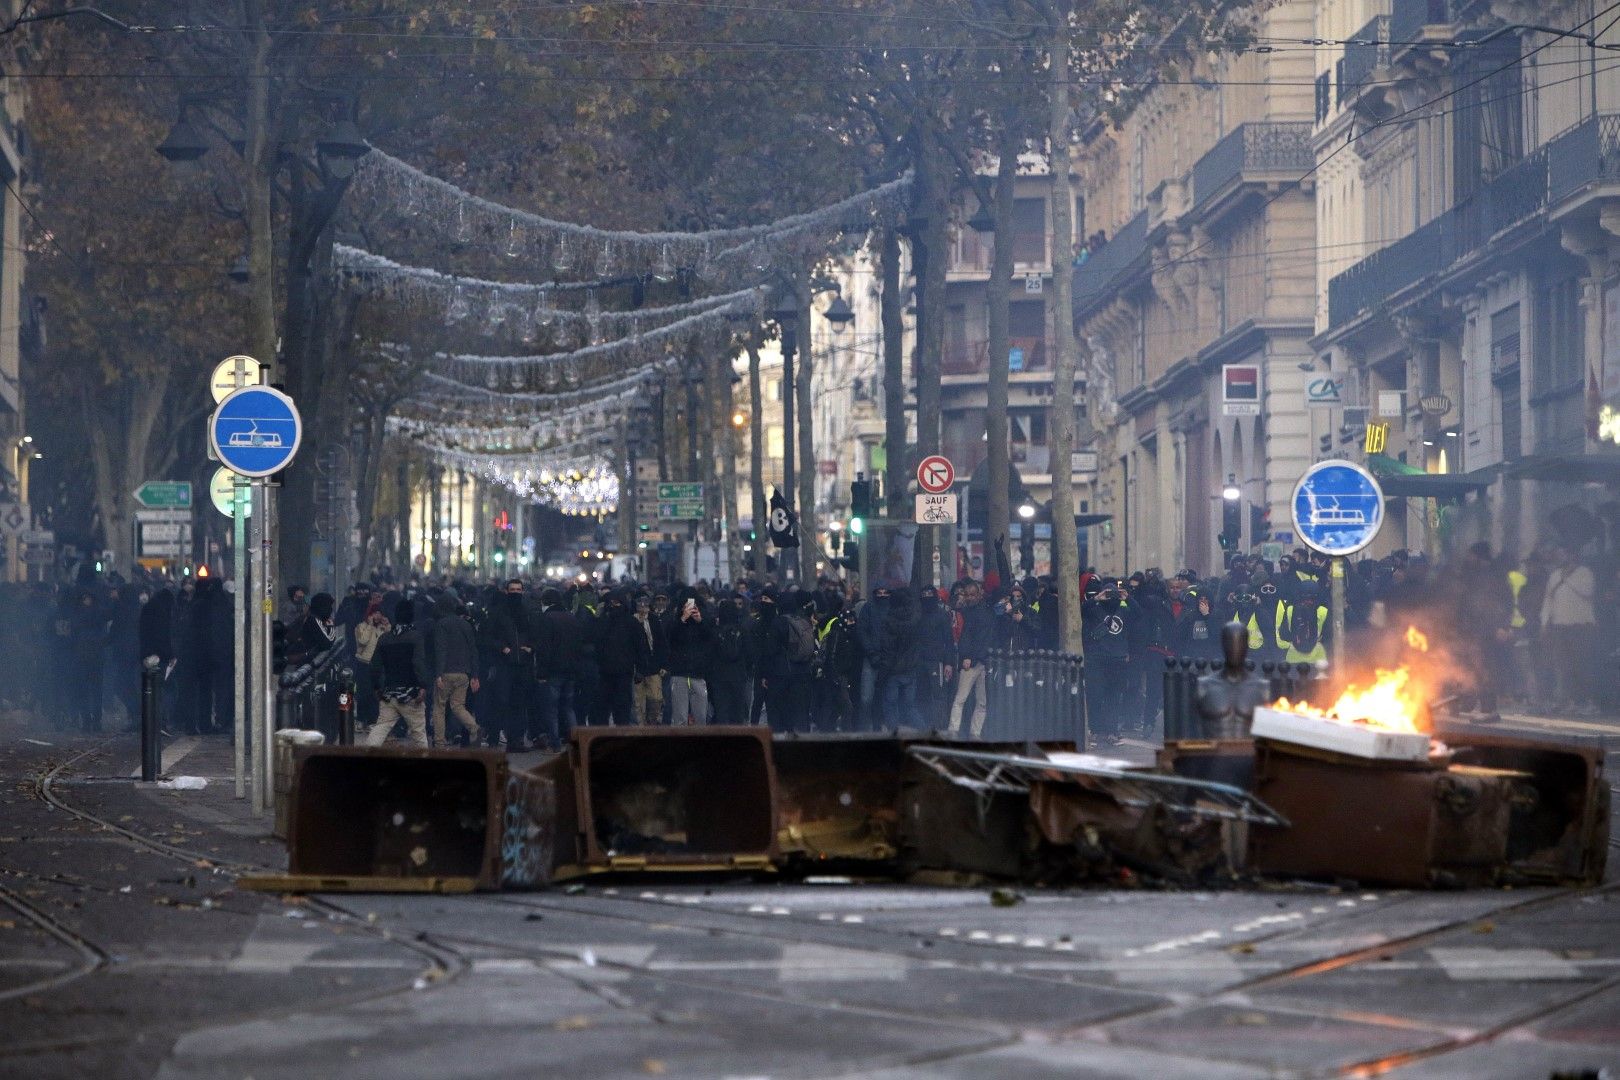 Демонстранти стоят зад "барикадите" в Марсилия